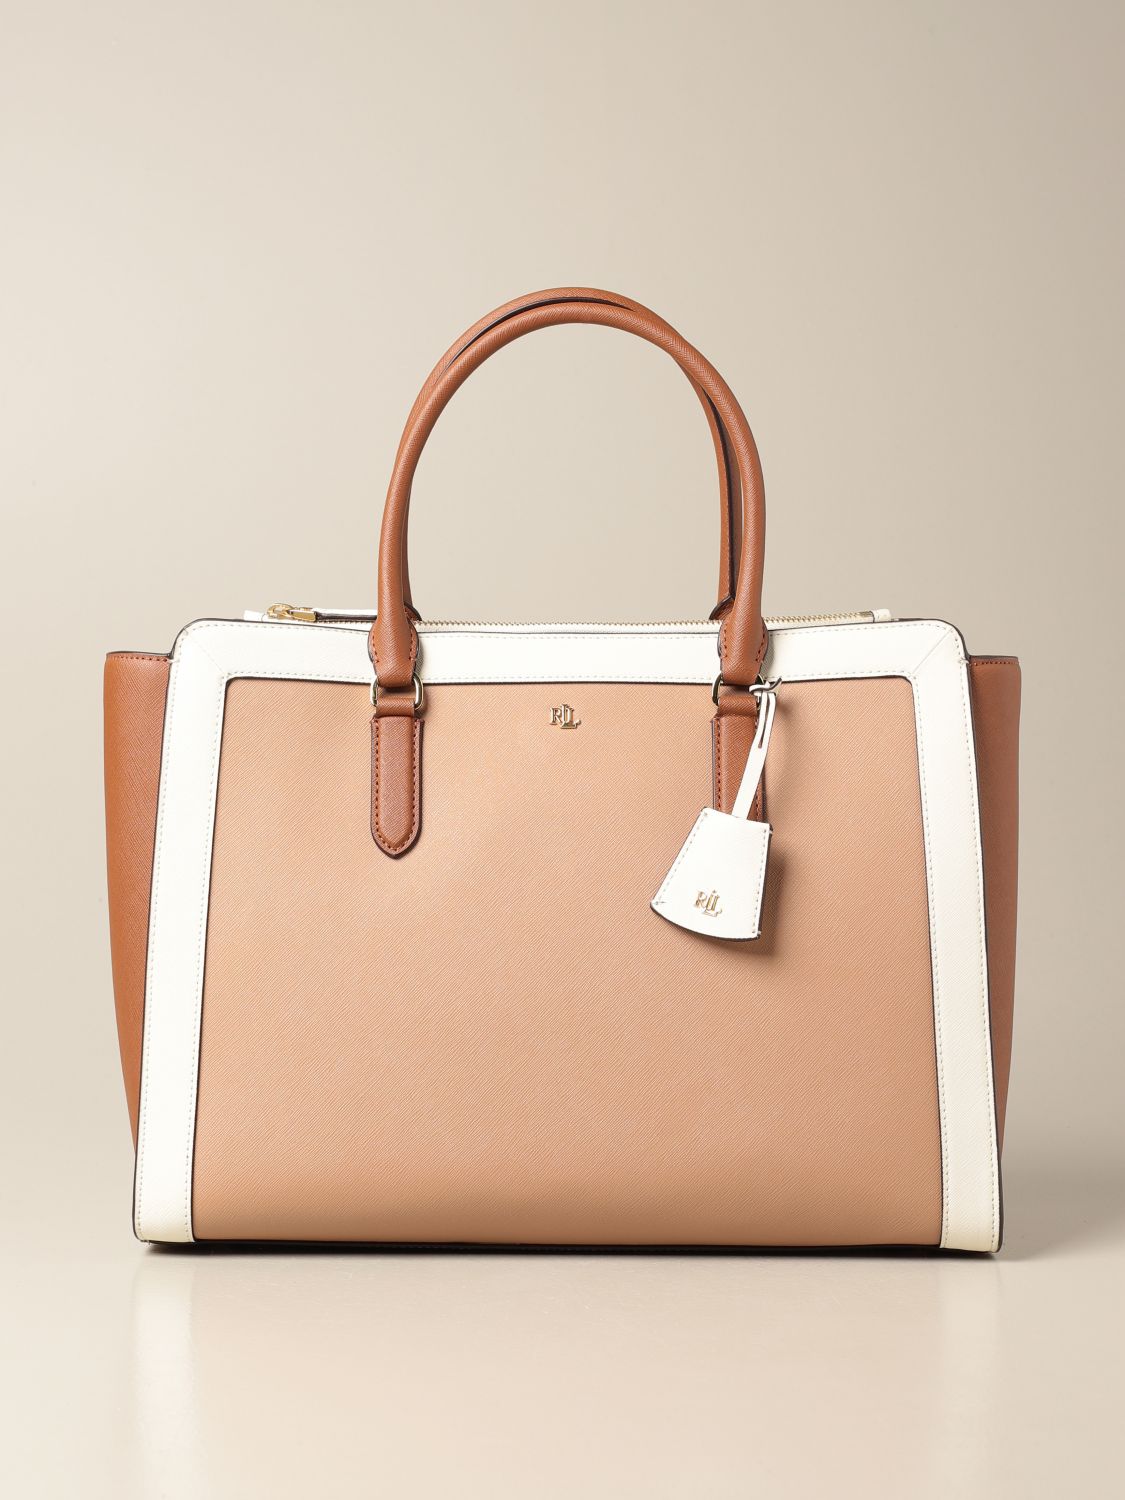 Lauren Ralph Lauren Authenticated Handbag